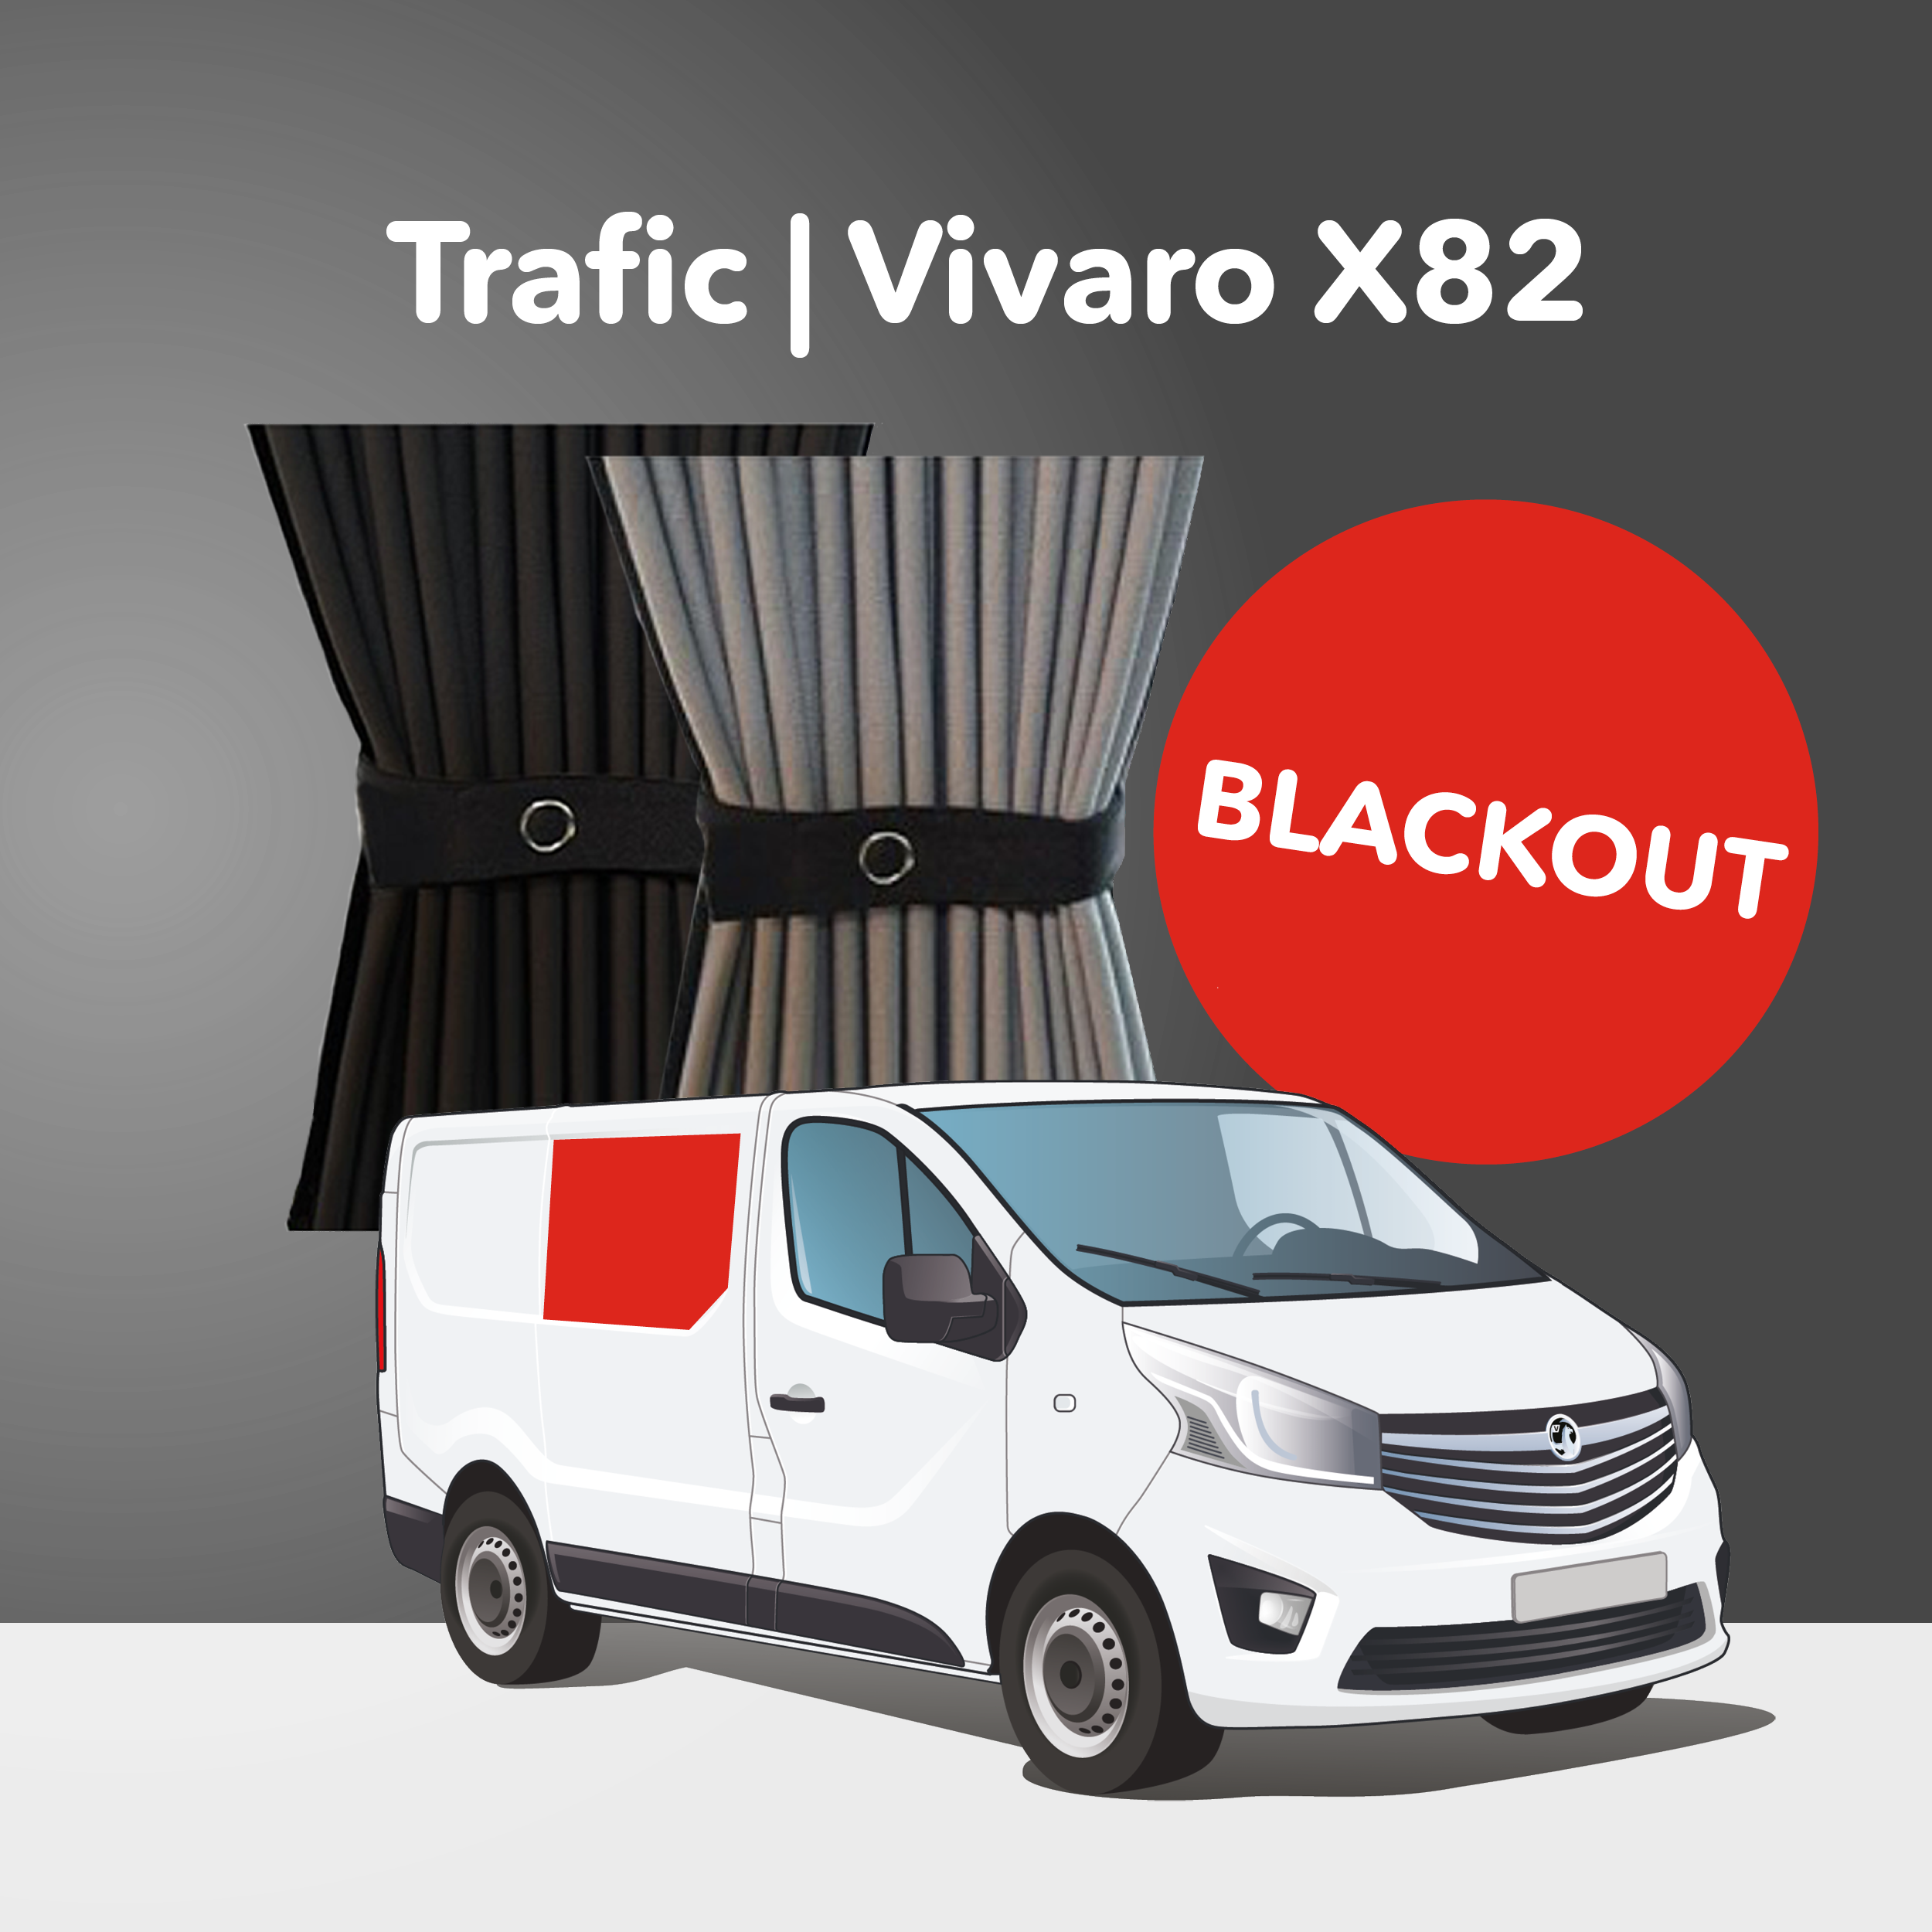 Trafic/Vivaro 2014-2018, Talento 2014+, NV300 2014+ X82 - Mitte Rechts - Nicht-Schiebetüren (Premium-Blackout)